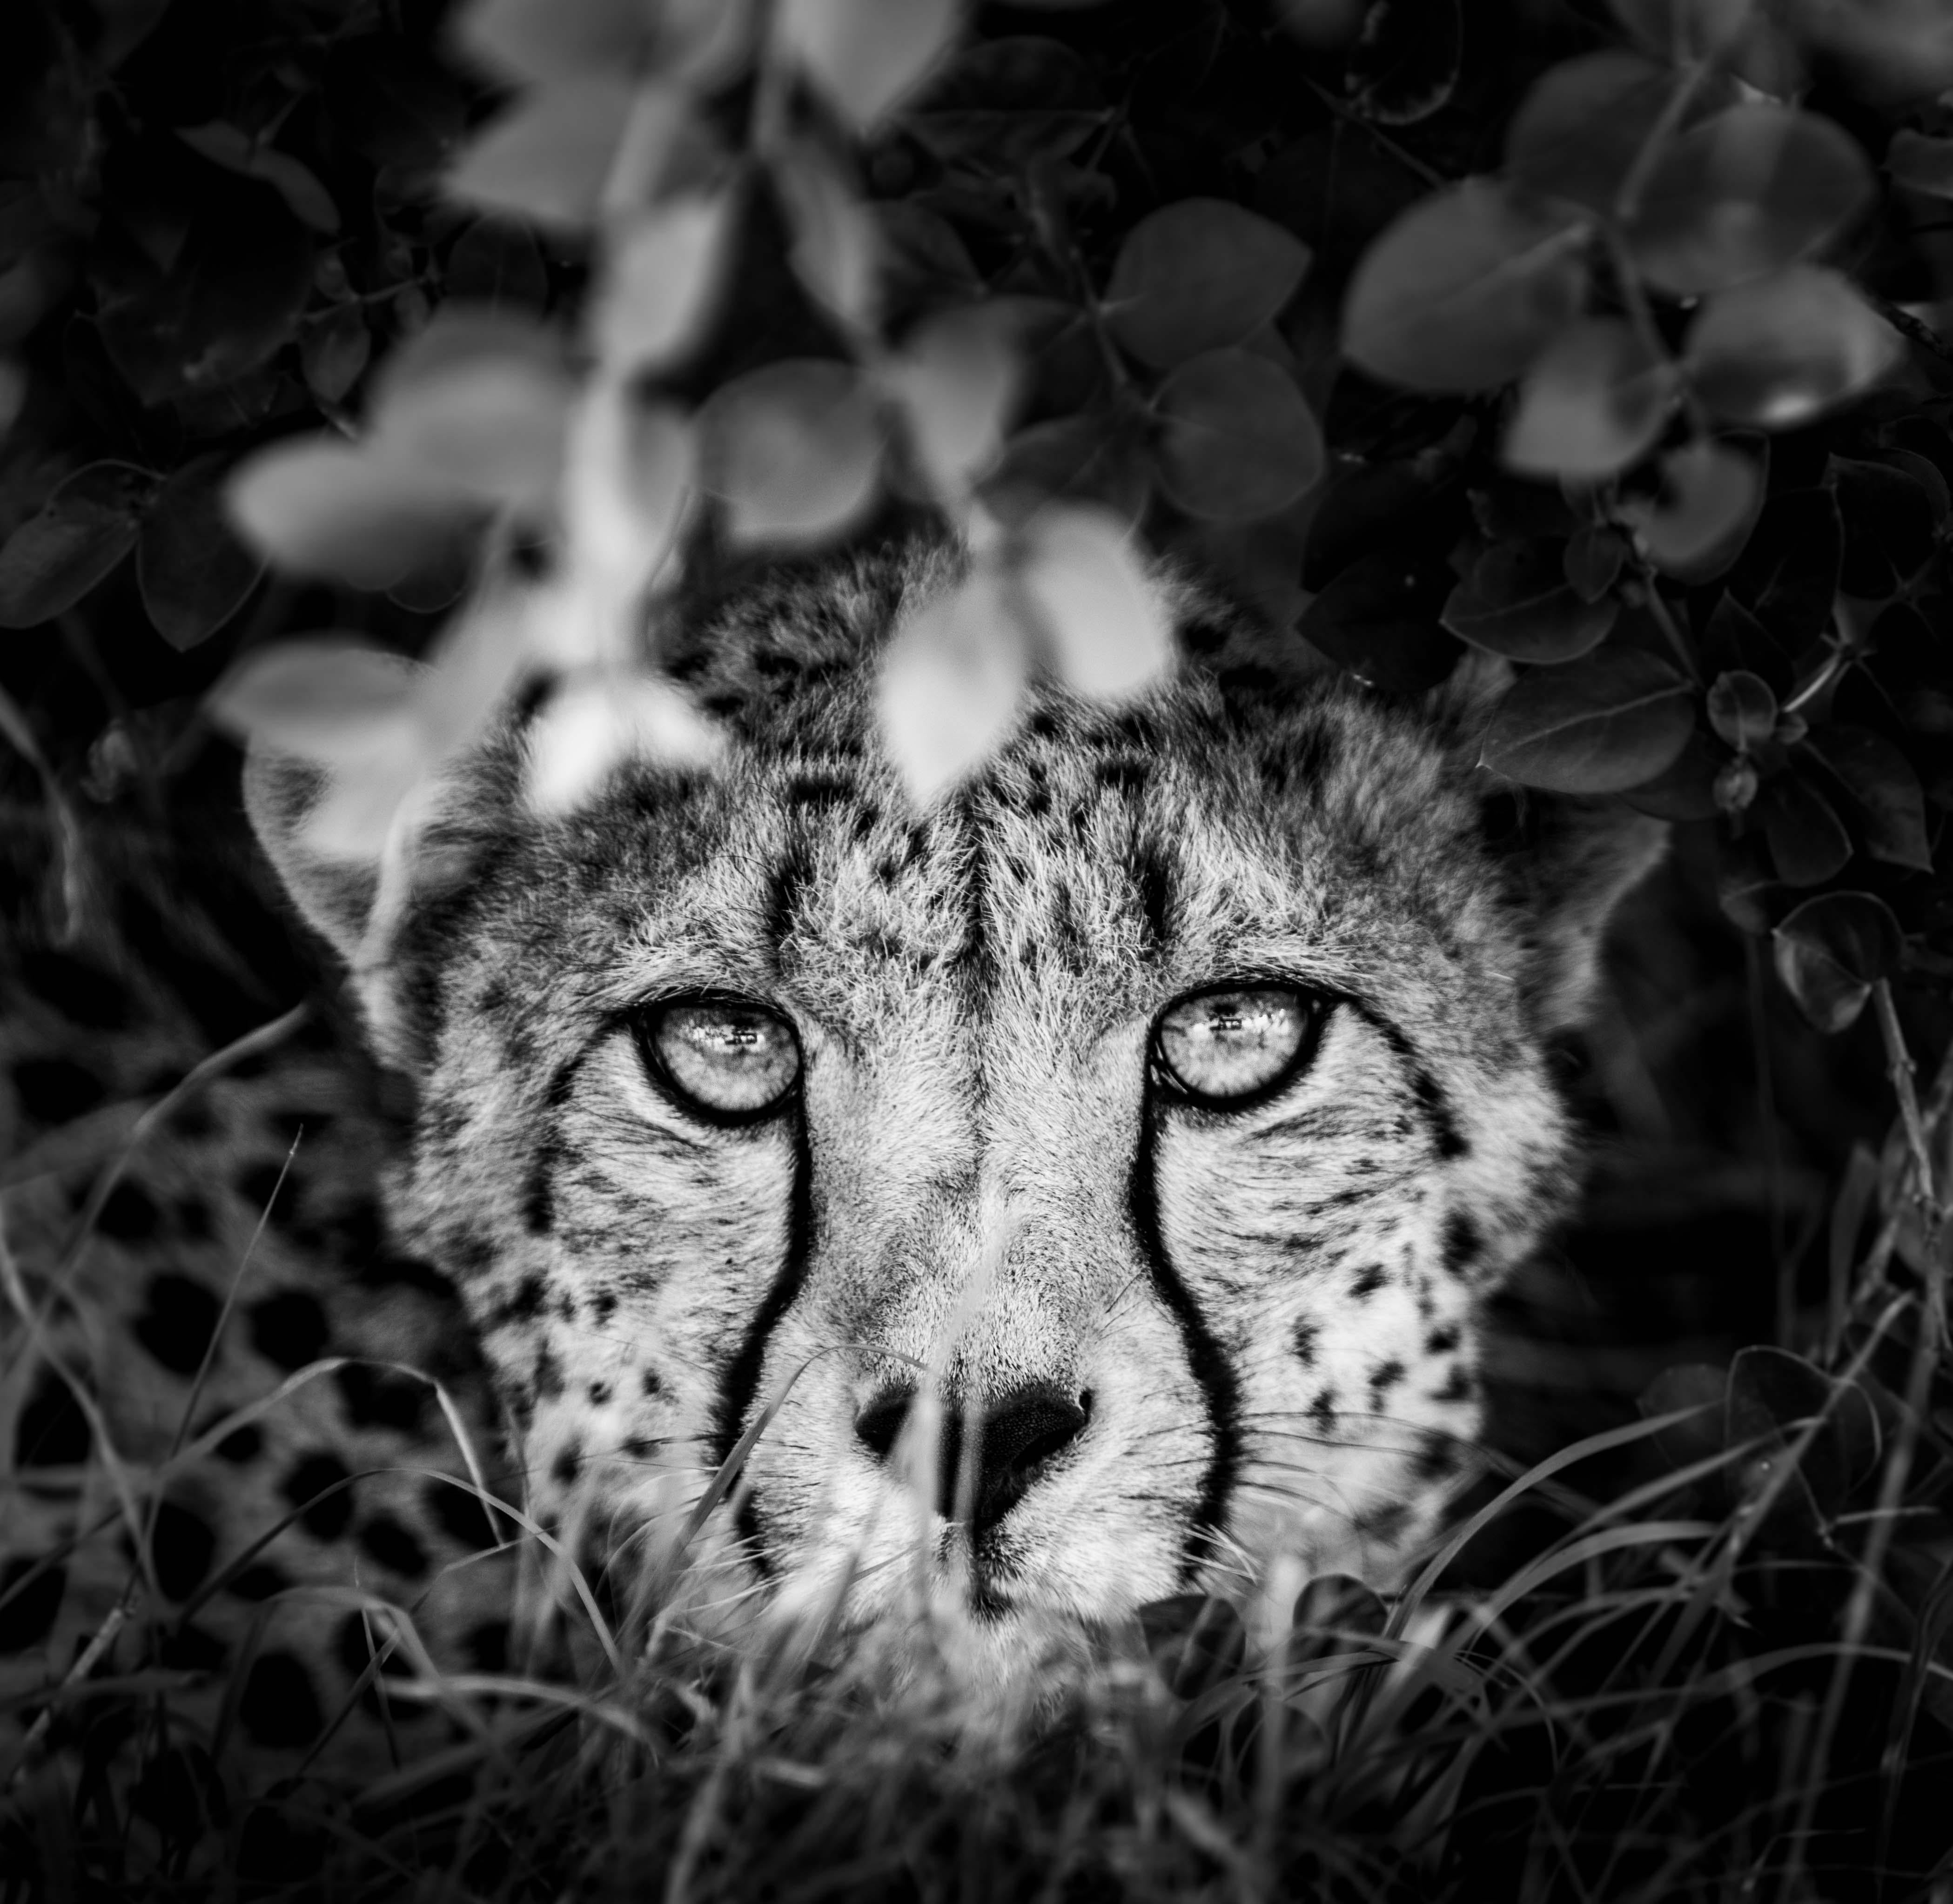 James Lewin - The Cheetah and I, Borana, Kenya, Photography 2020, Printed After